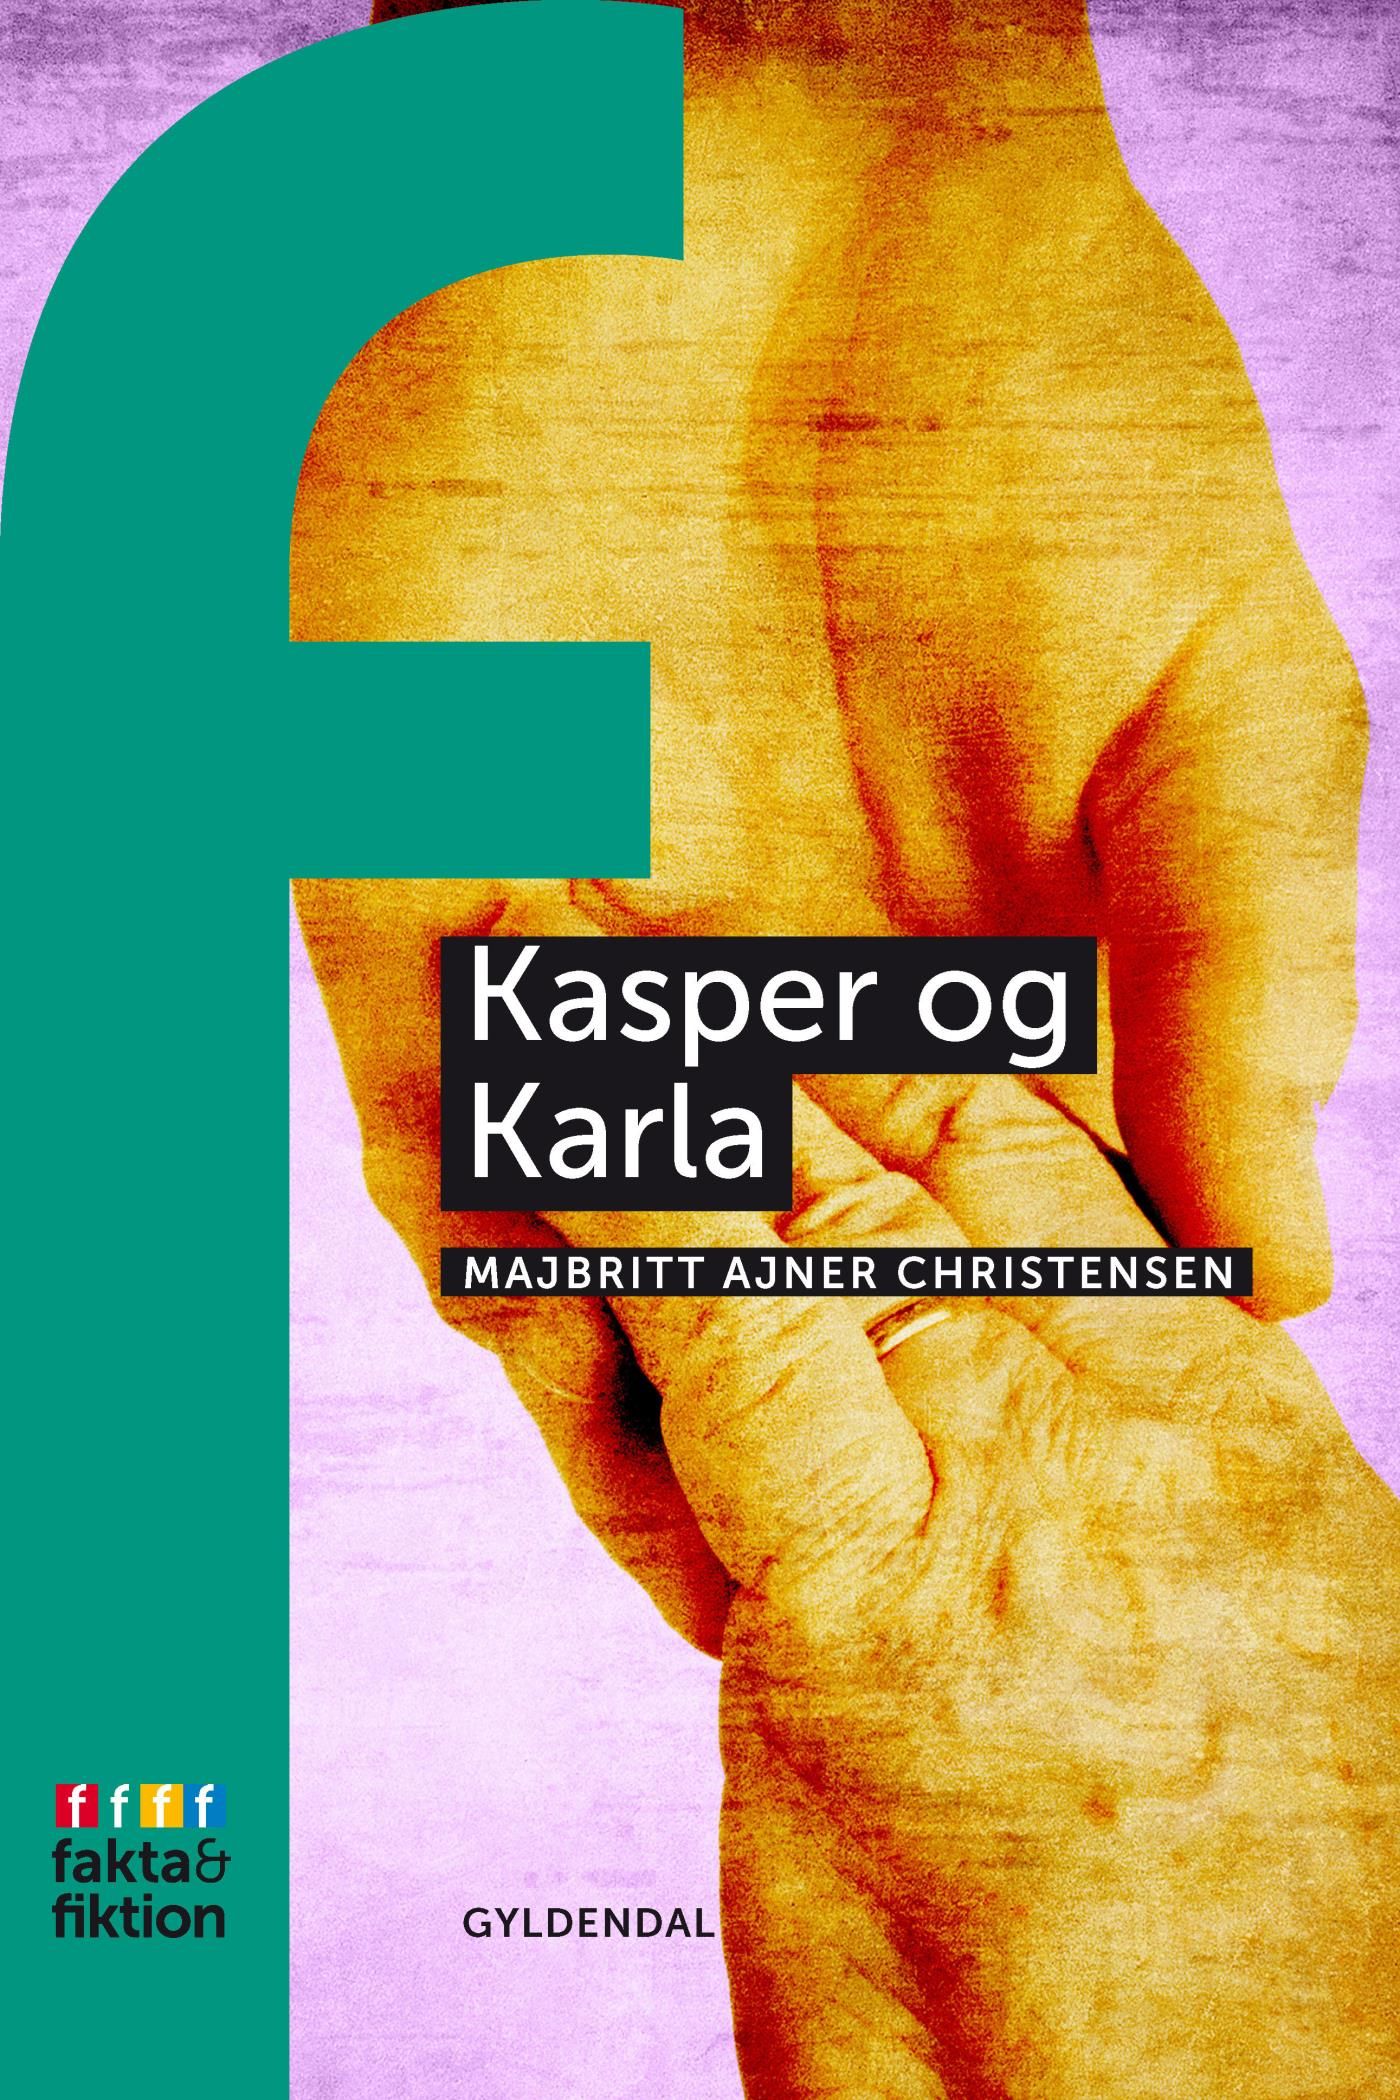 Kasper og Karla, e-bok av MajBritt Ajner Christiansen